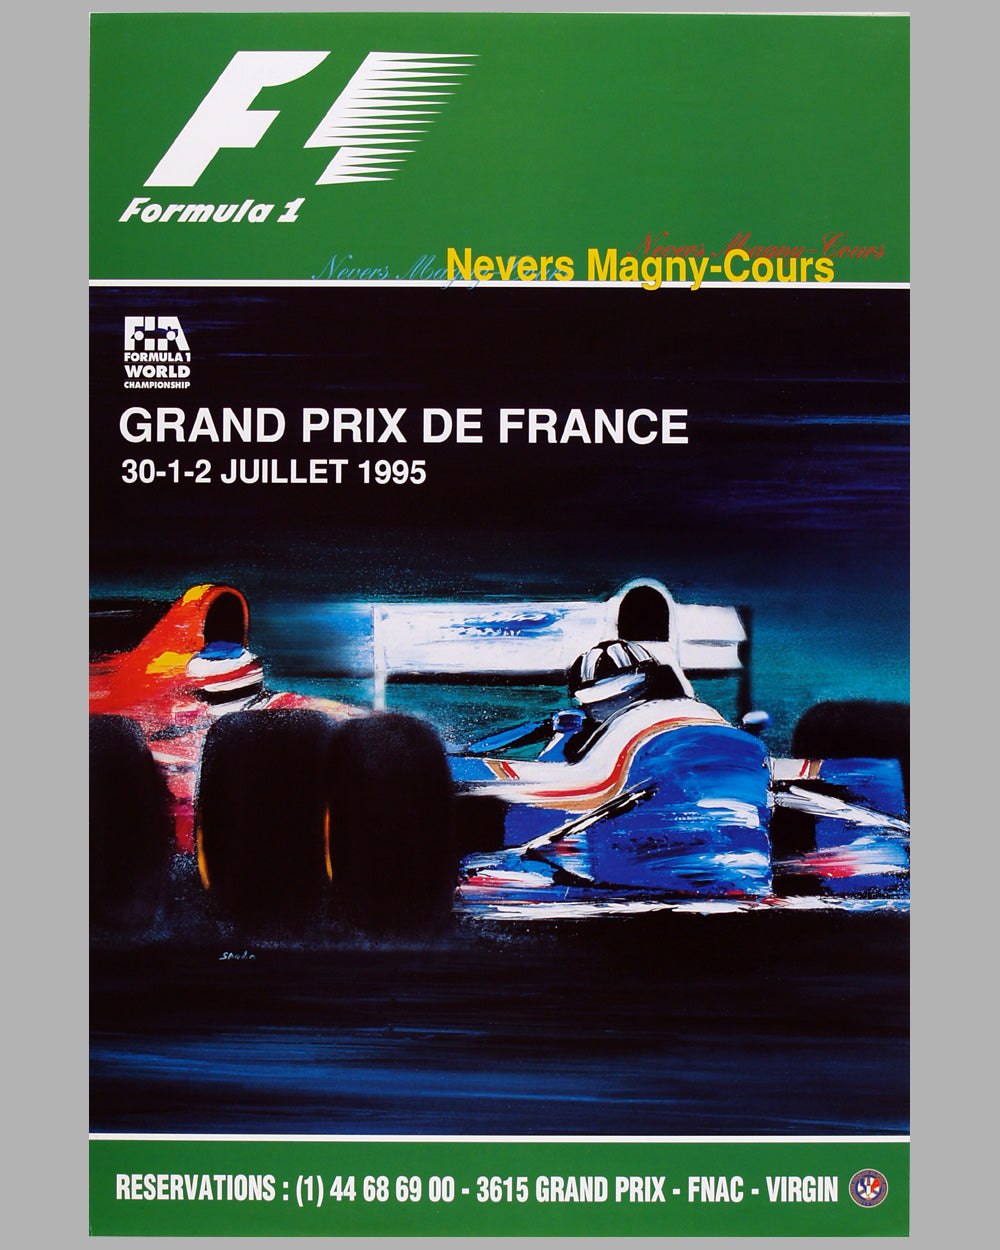 1995 Grand Prix de France original event poster by Spabo